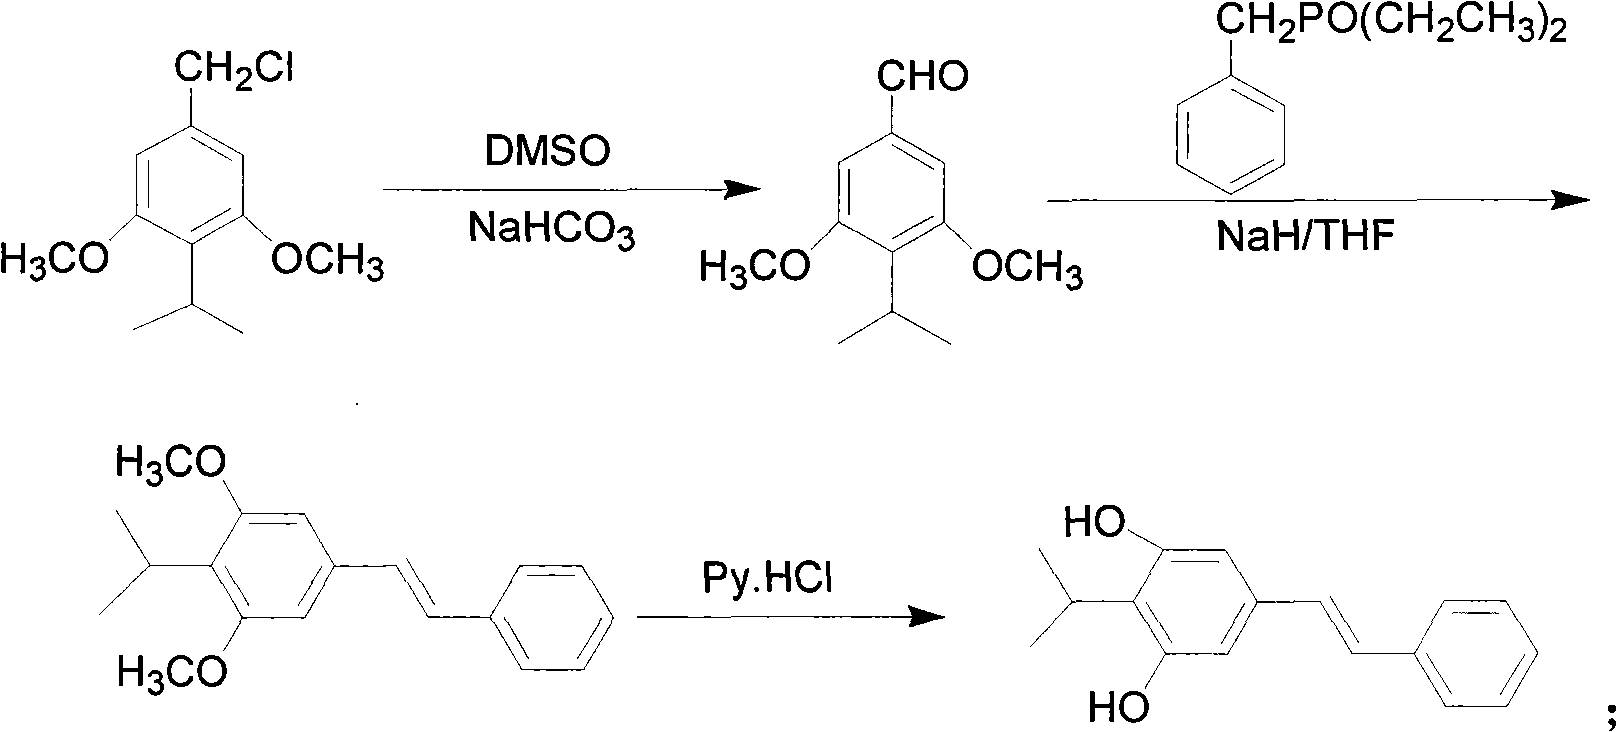 Method for synthesizing stilbene compound by utilizing Kornblum oxidation reaction